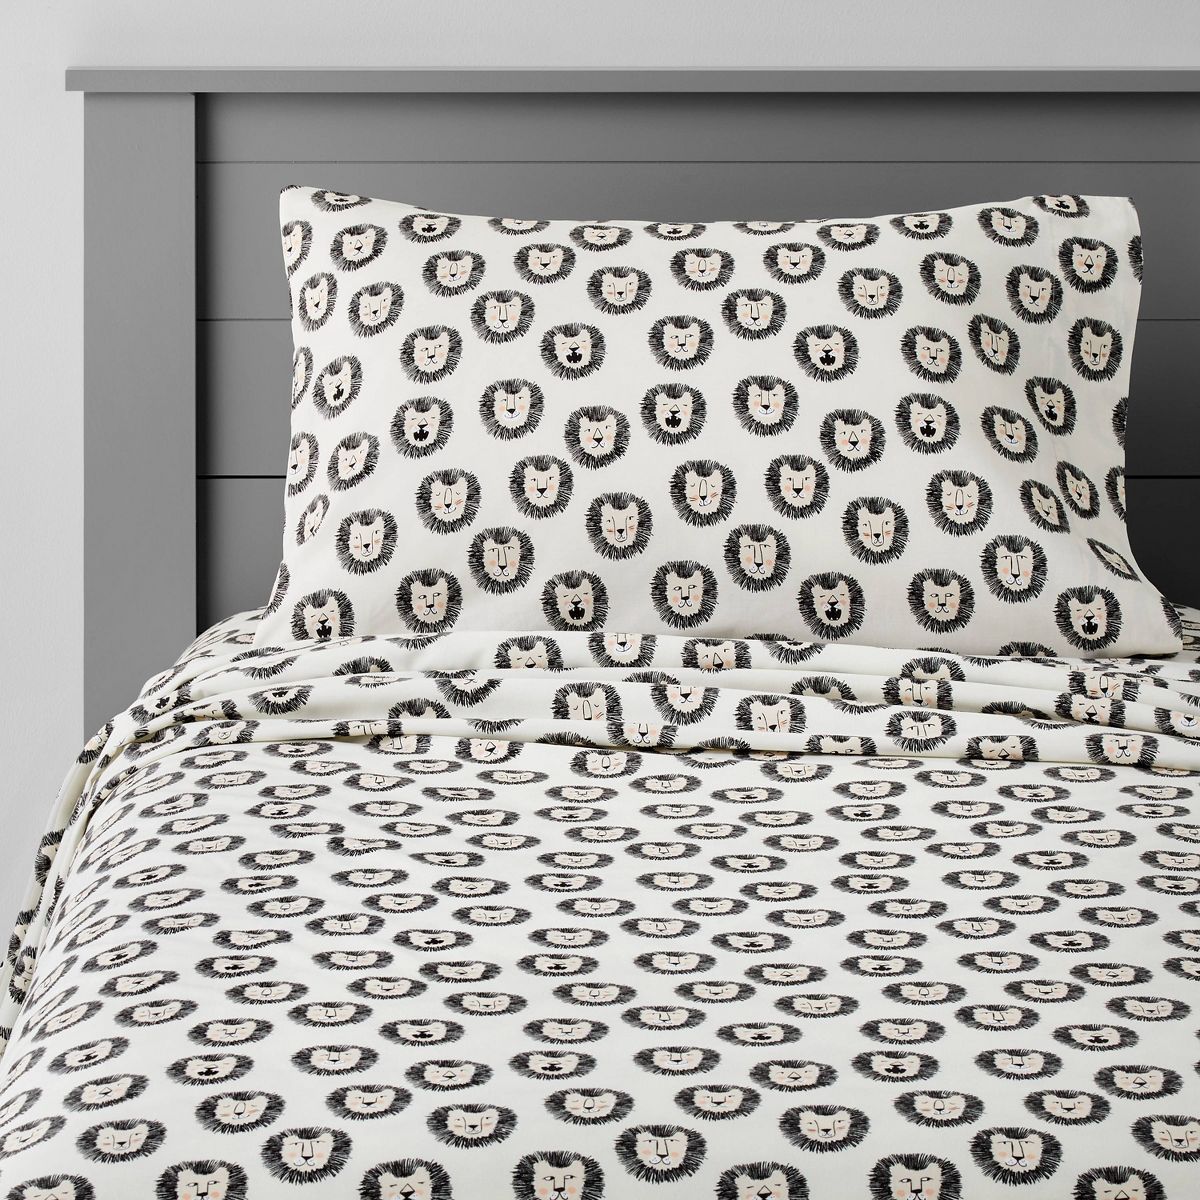 Toddler Lions Cotton Kids' Sheet Set Black & White - Pillowfort™ | Target